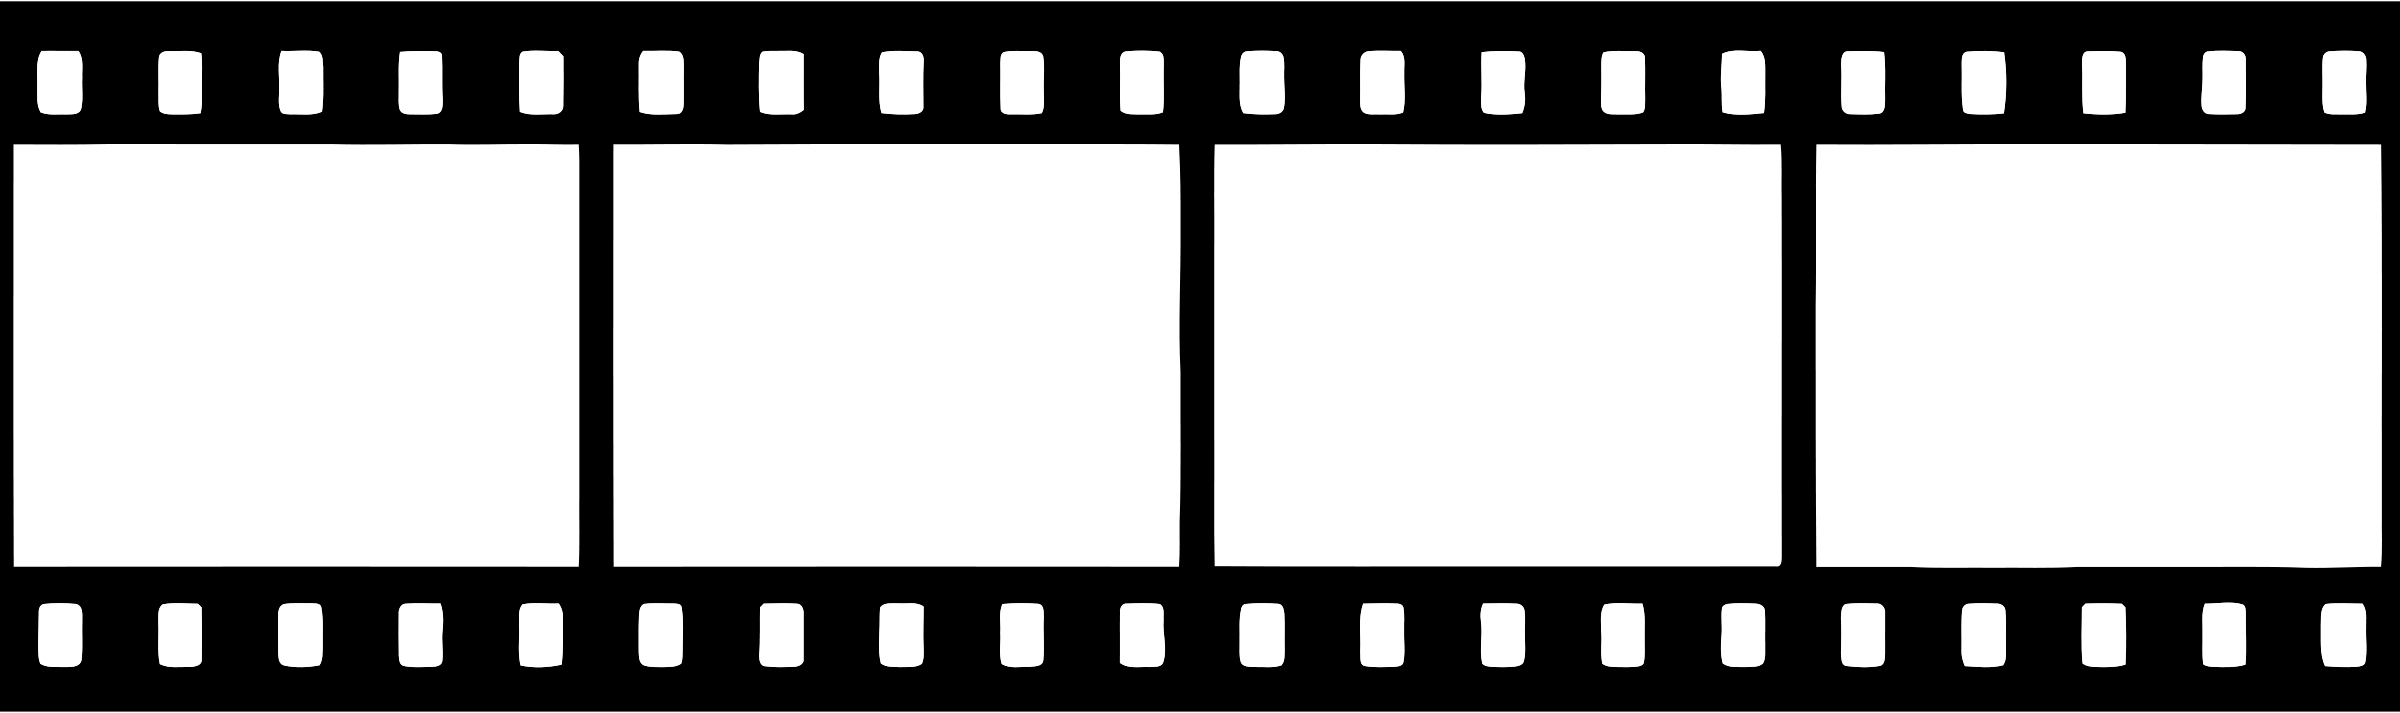 Movie Film Clipart